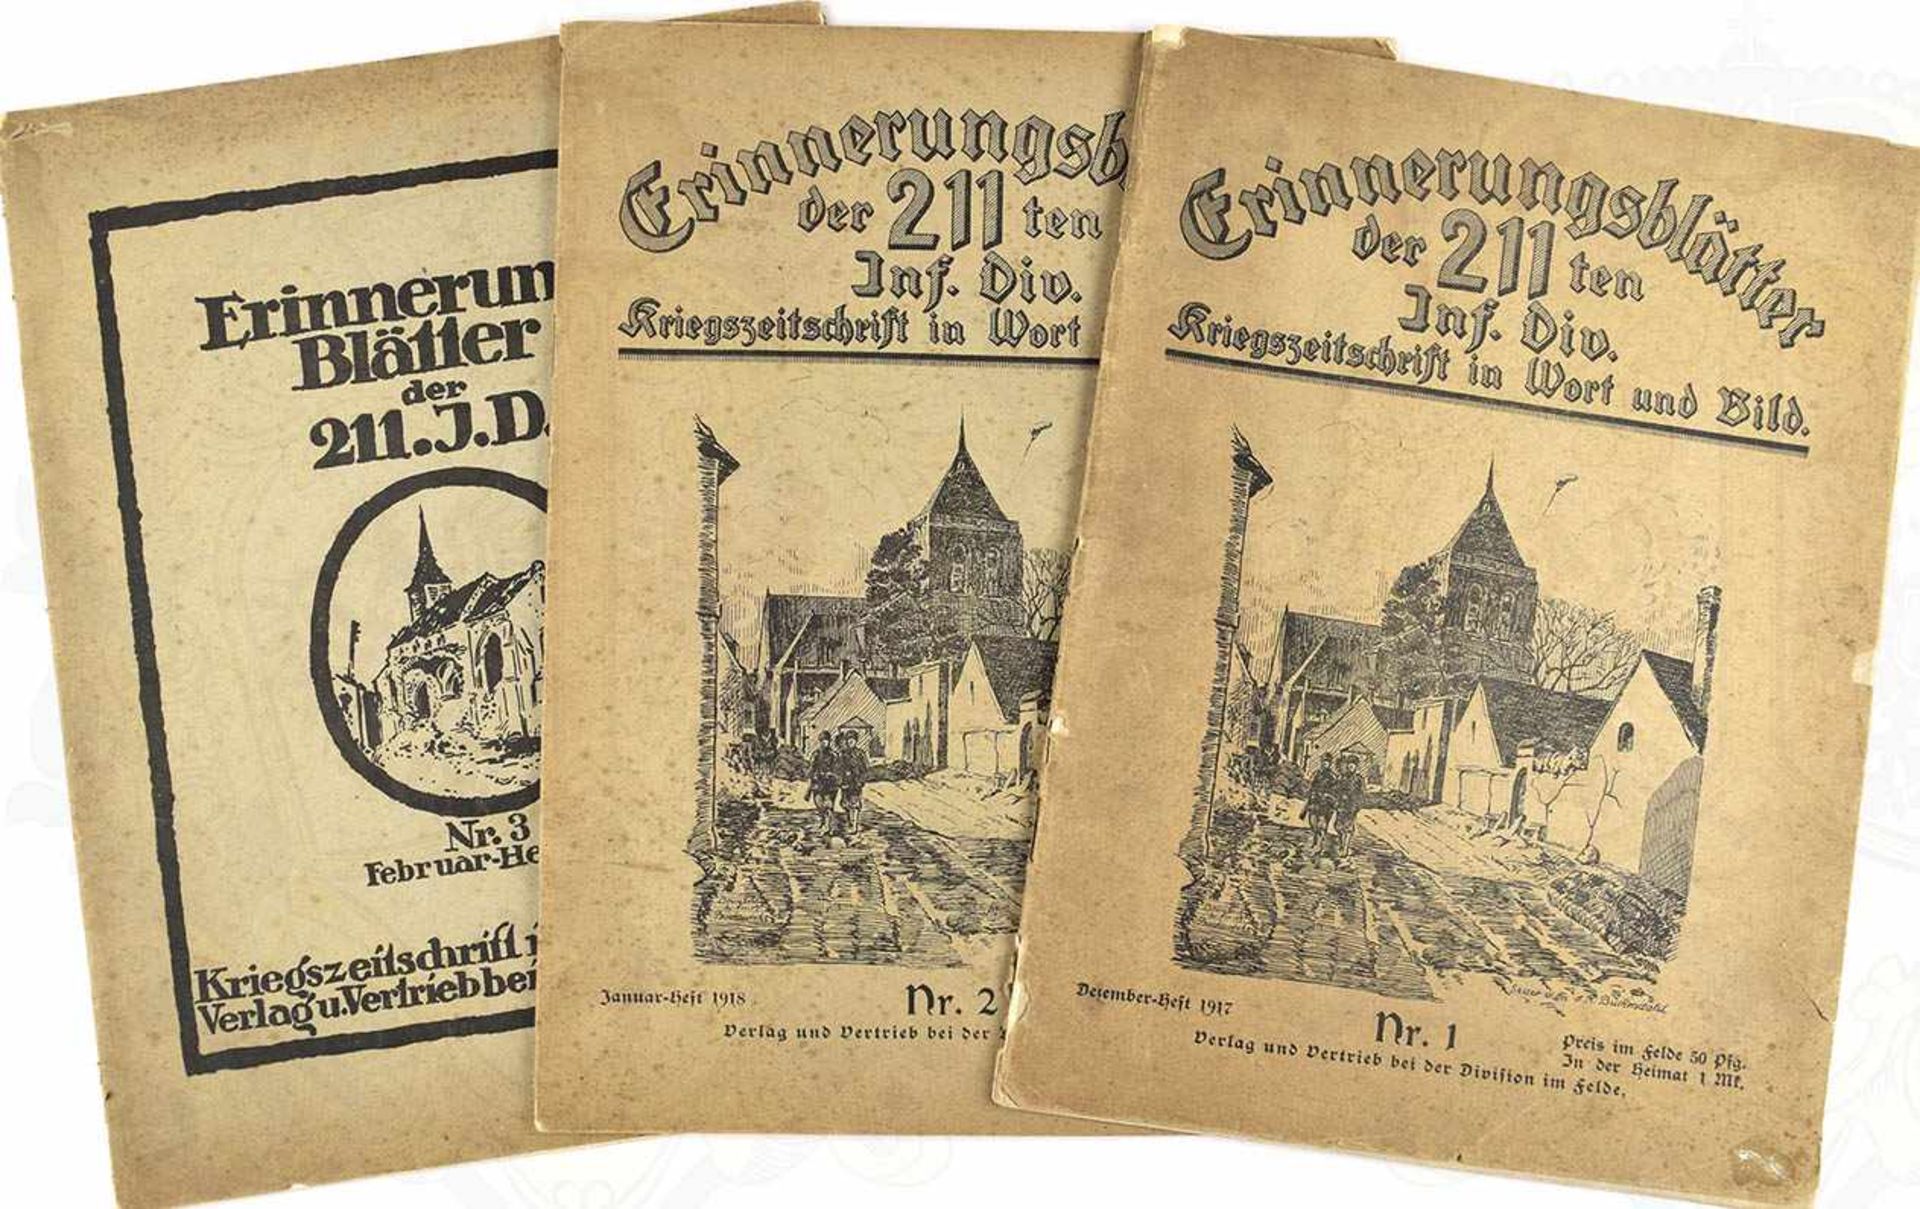 ERINNERUNGSBLÄTTER DER 211TEN INF.DIV., Hefte 1-3, 1917-18, jew. 34 S., zahlr. Abb., kart.